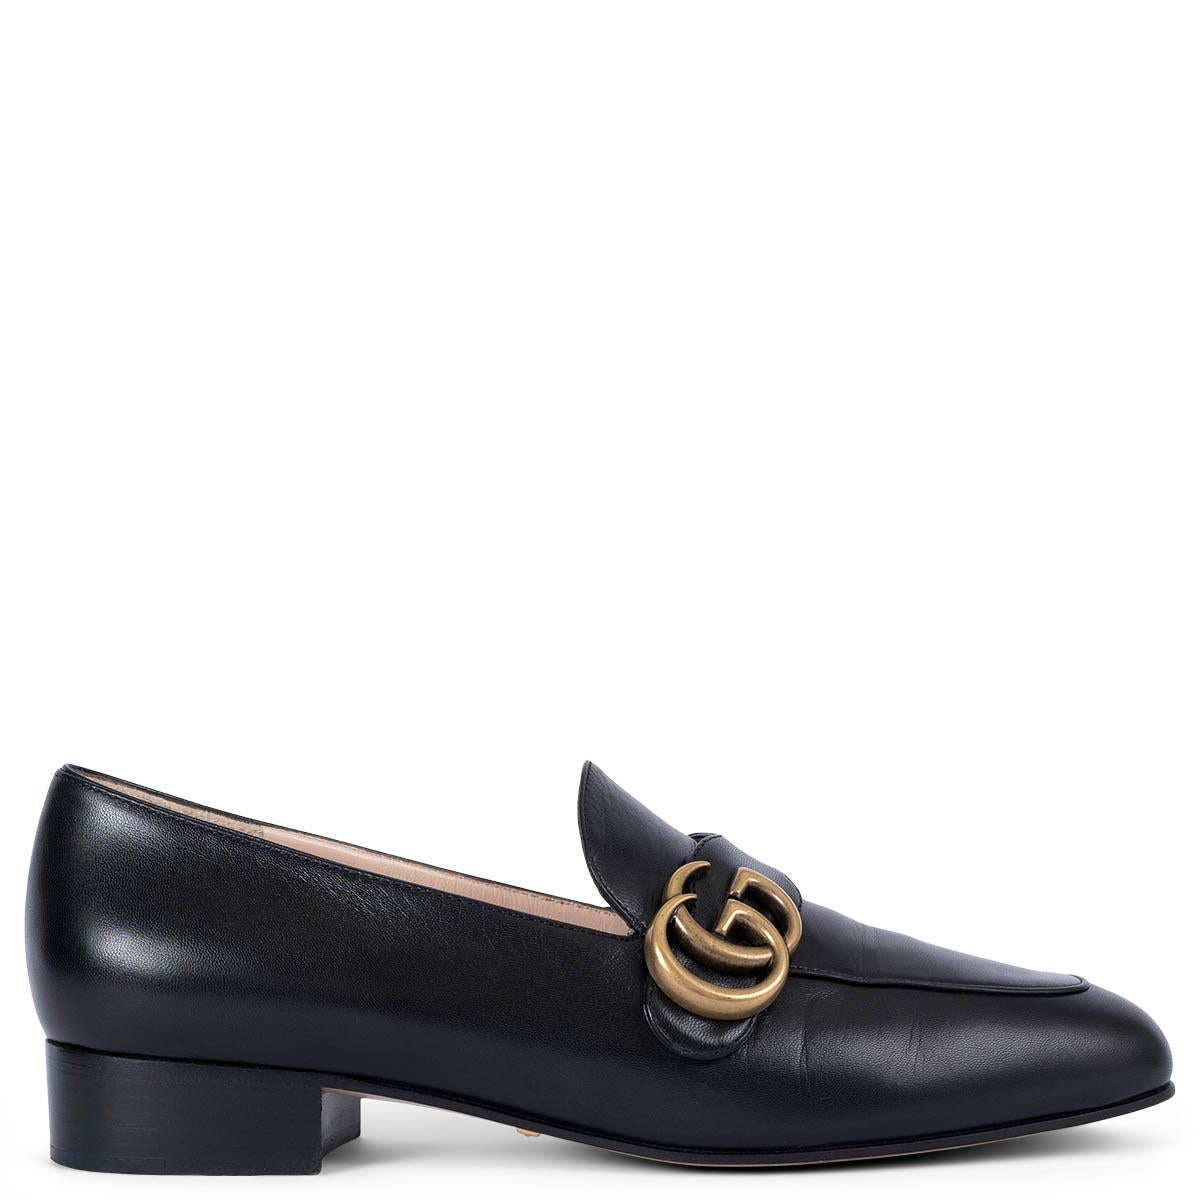 GGCI cuir noir GG MARMONT Mocassins Chaussures 38 en vente